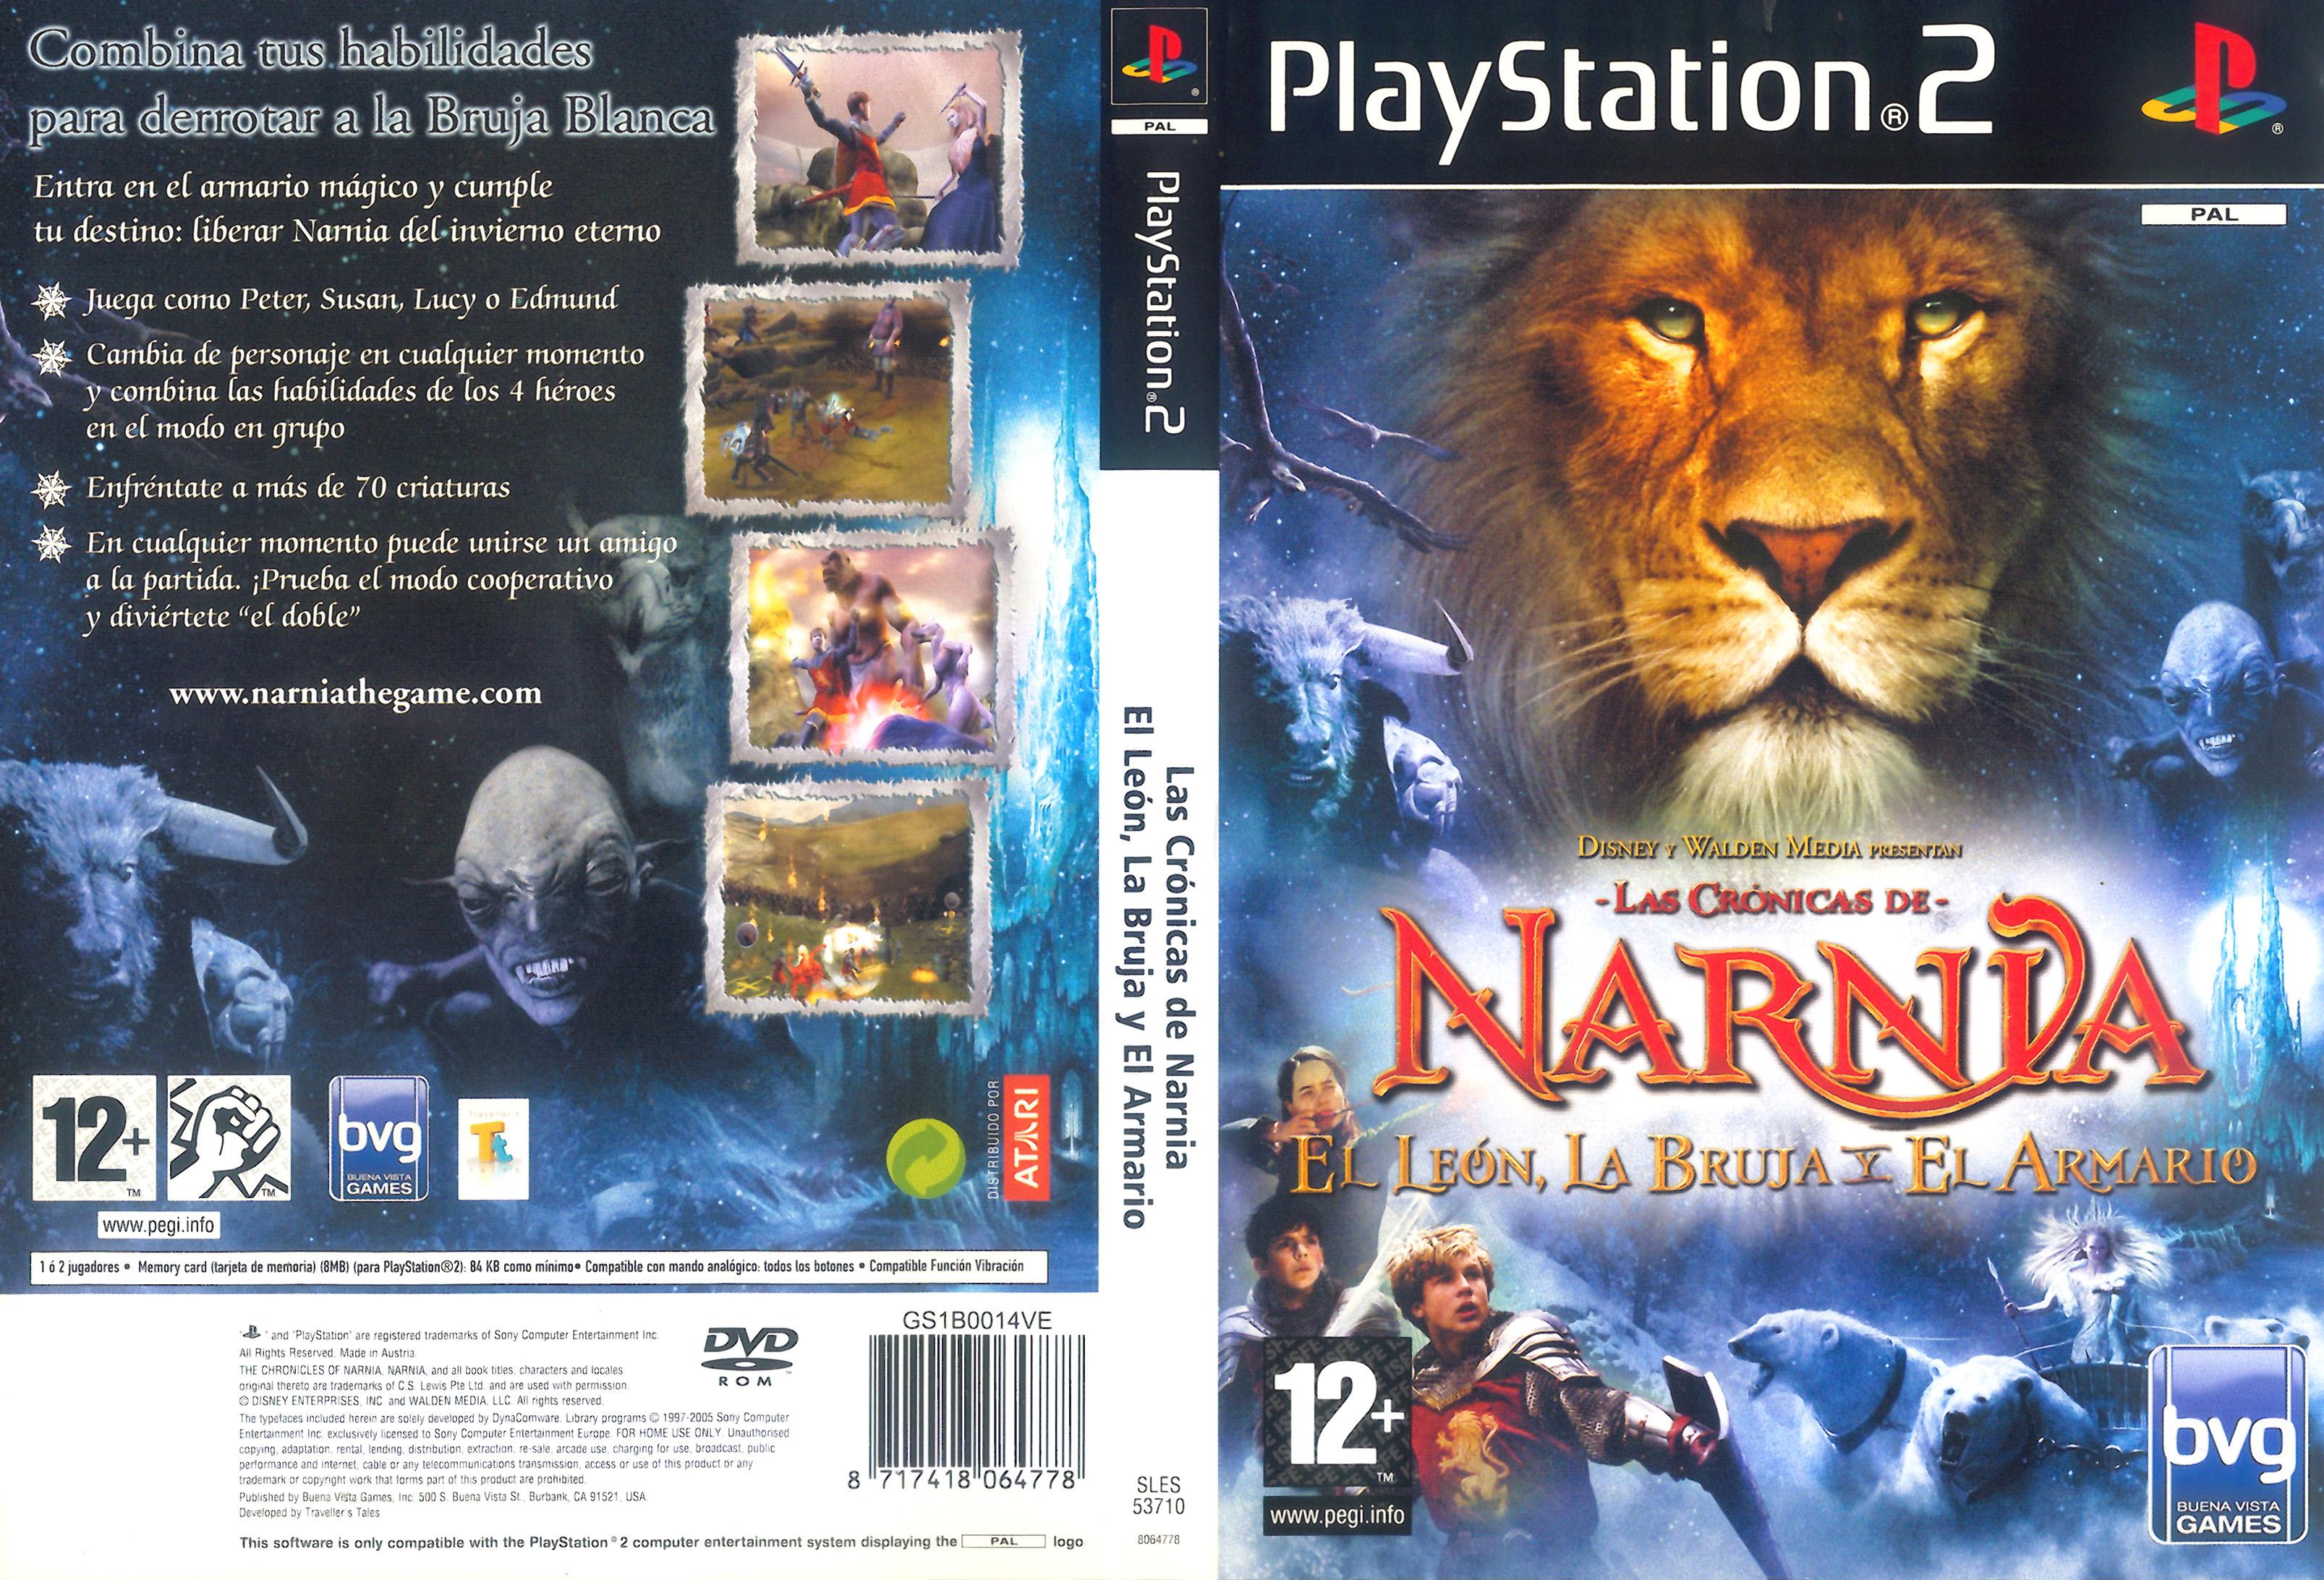 Las Crуnicas de Narnia - El Leуn, la Bruja y el Armario PSX cover